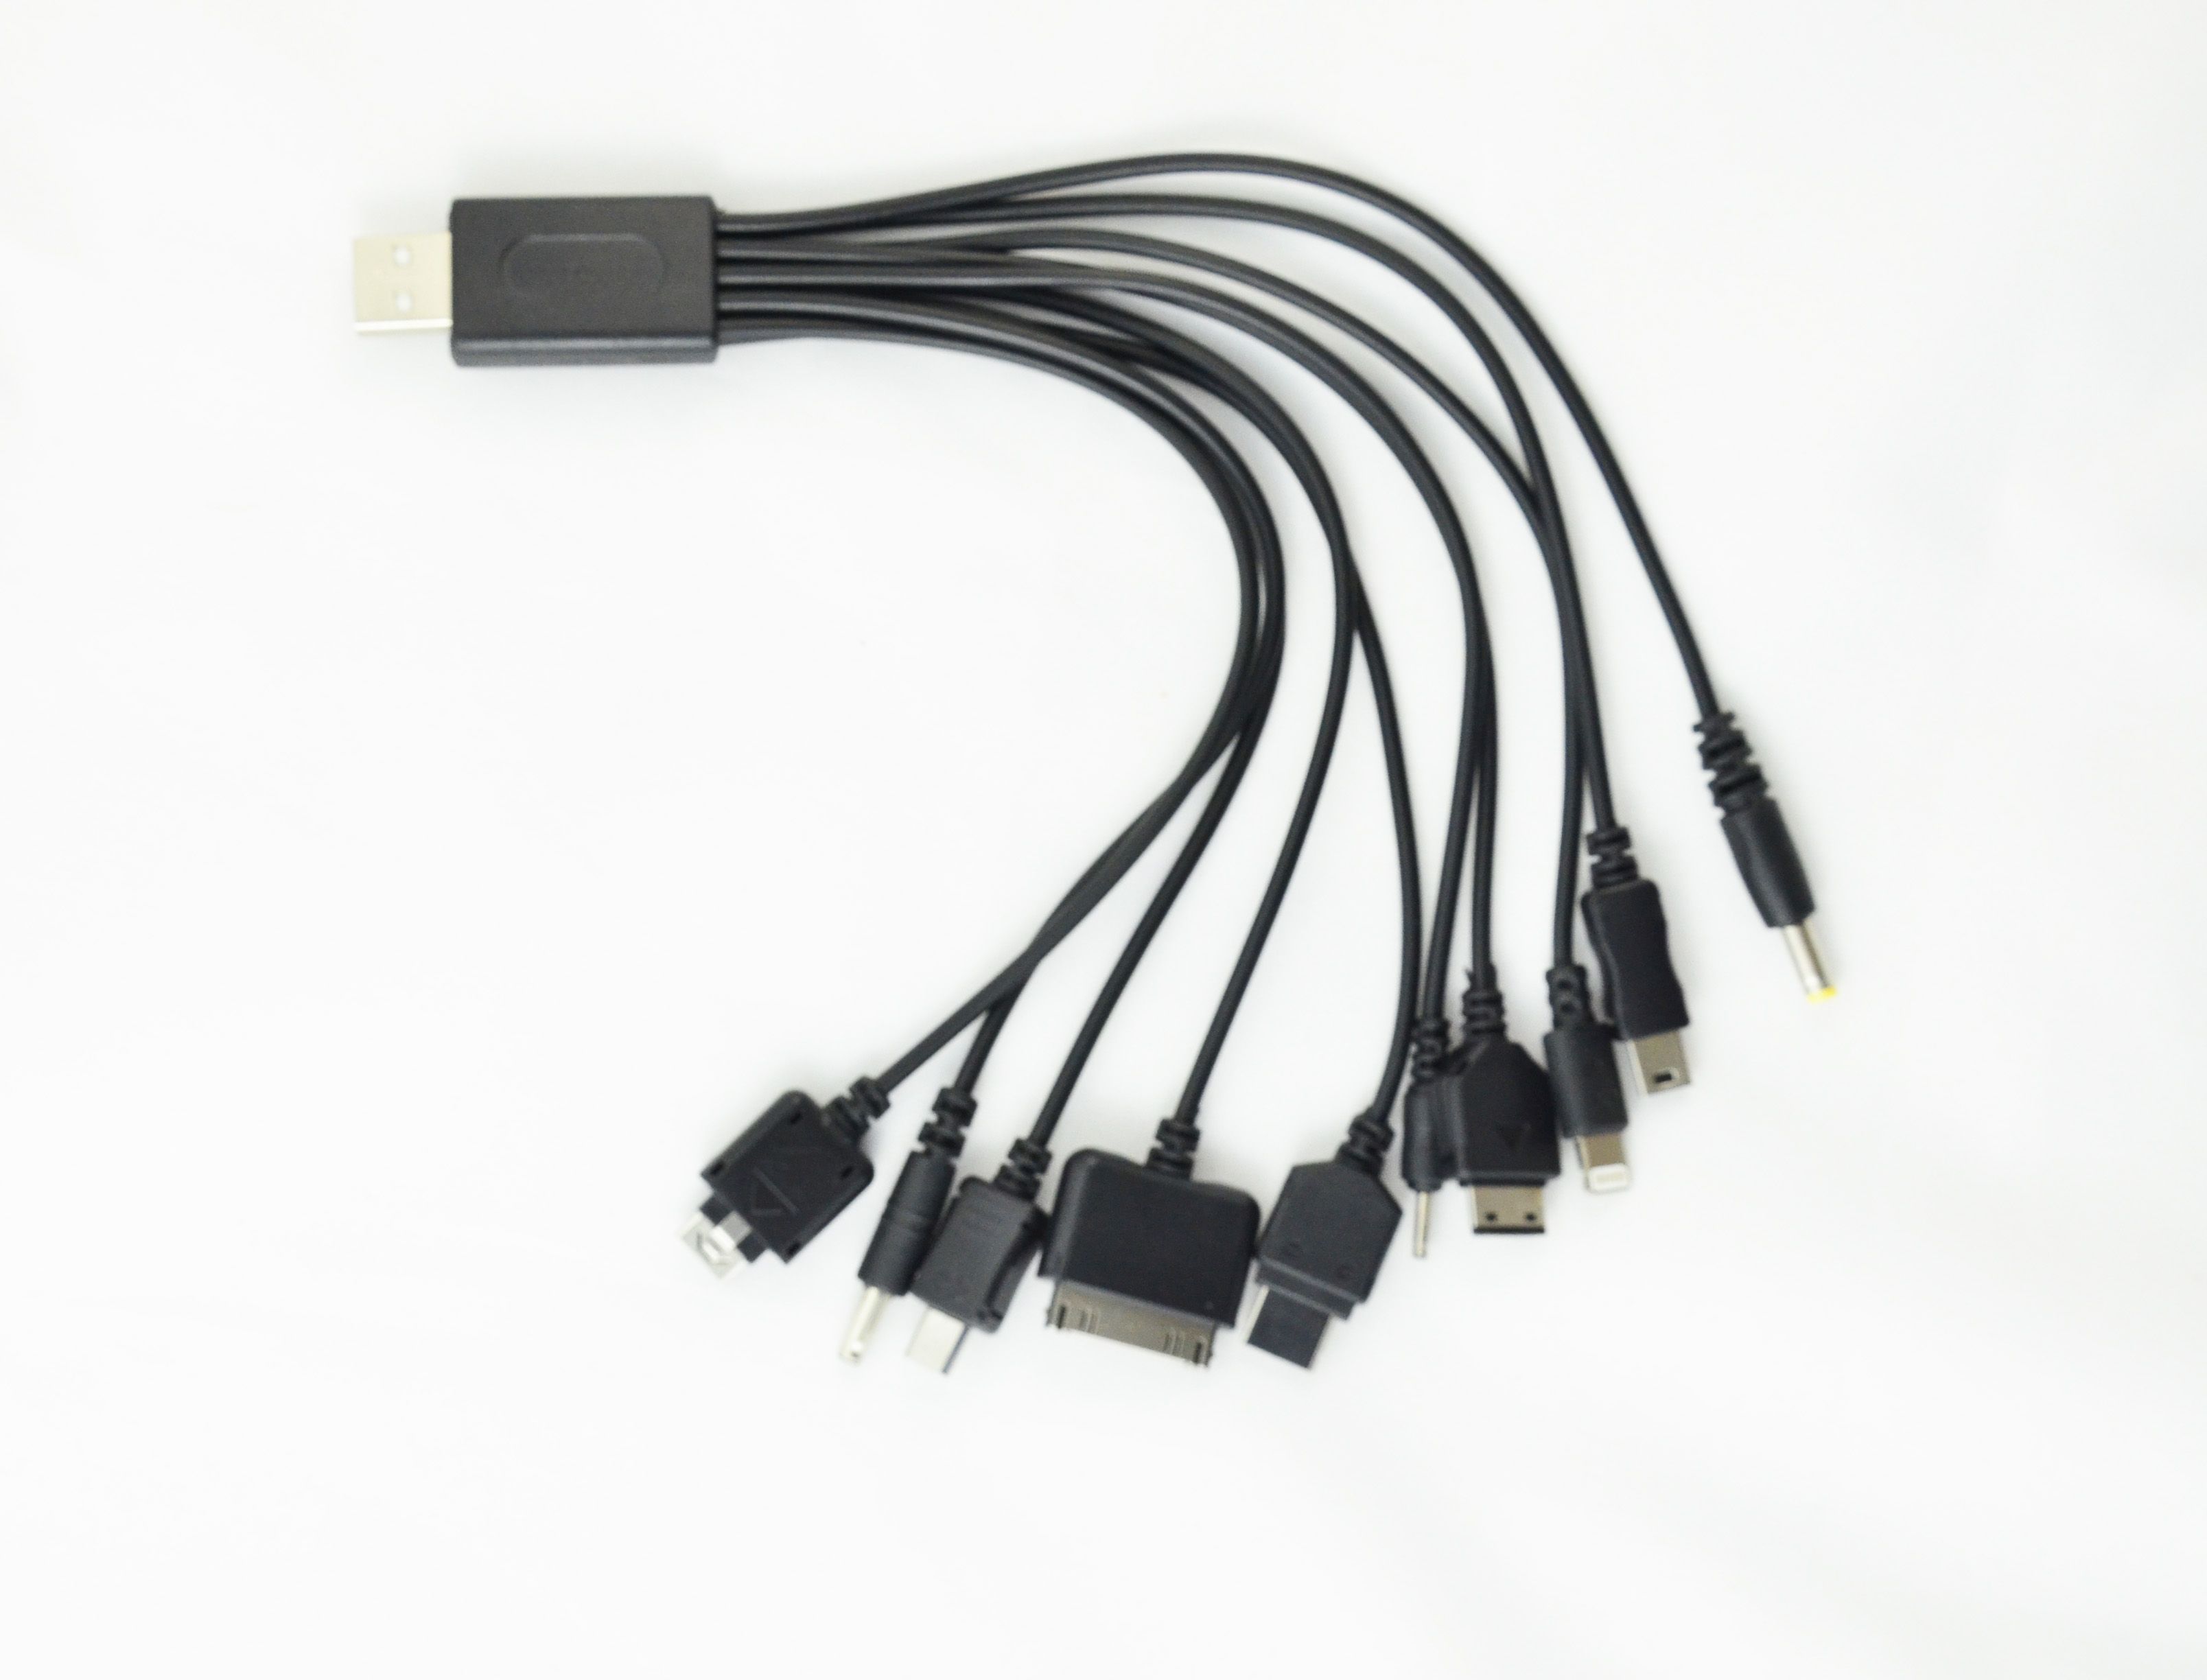 TEC054, CABLE USB MULTIPUERTOS
Cable Adaptador en color negro con 10 entradas diferentes.